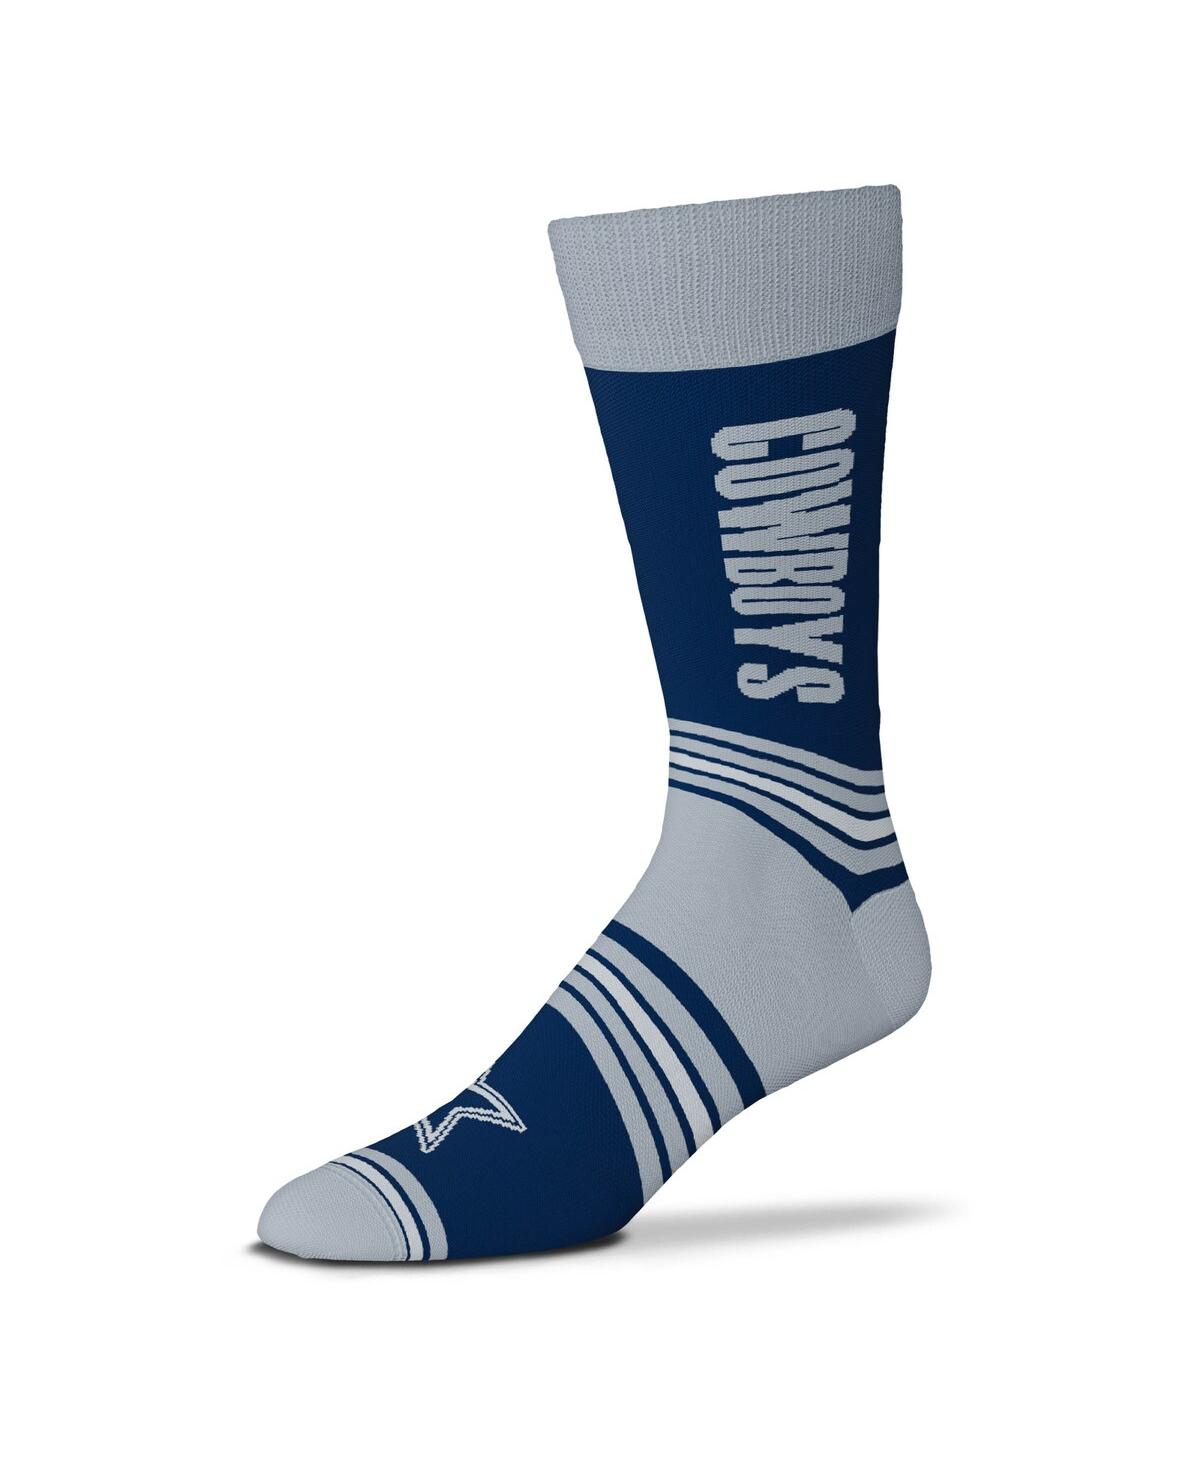 Men's and Women's For Bare Feet Navy Dallas Cowboys Go Team Trouser Socks - Navy